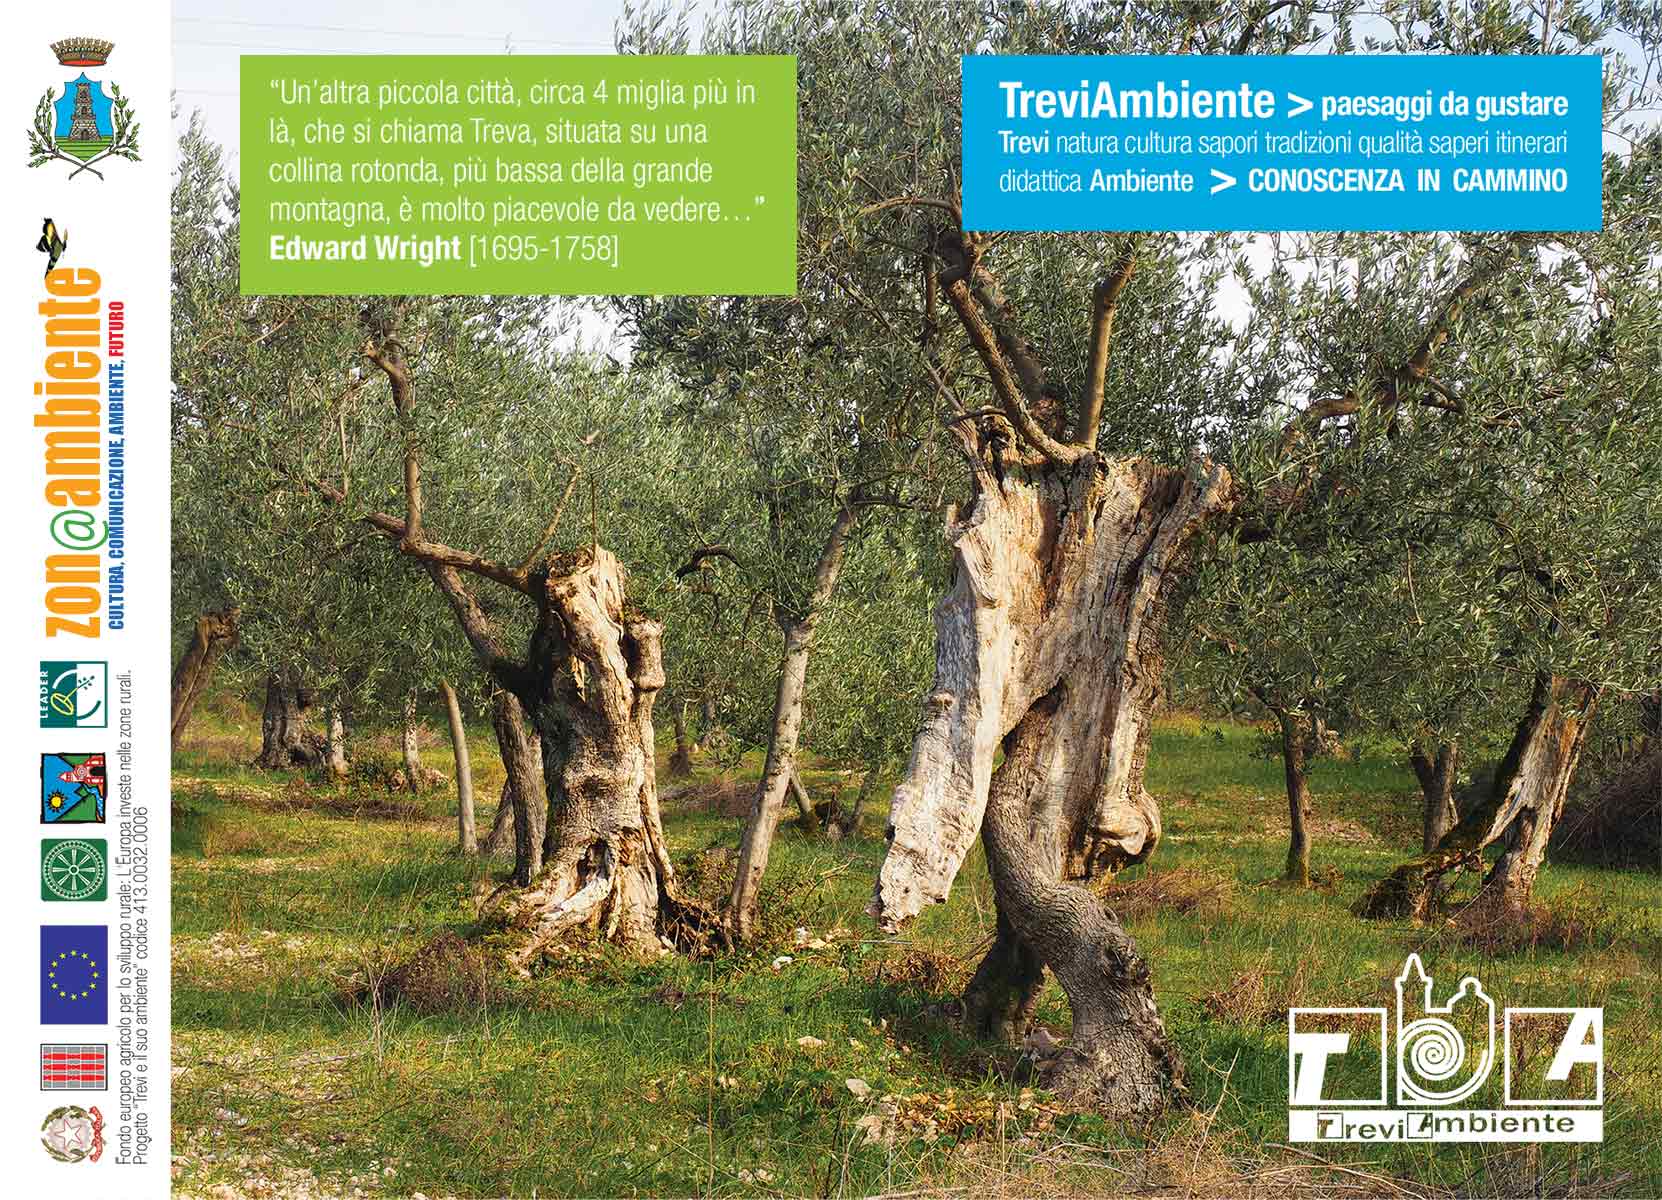 Brochure-TreviAmbiente-2015-web